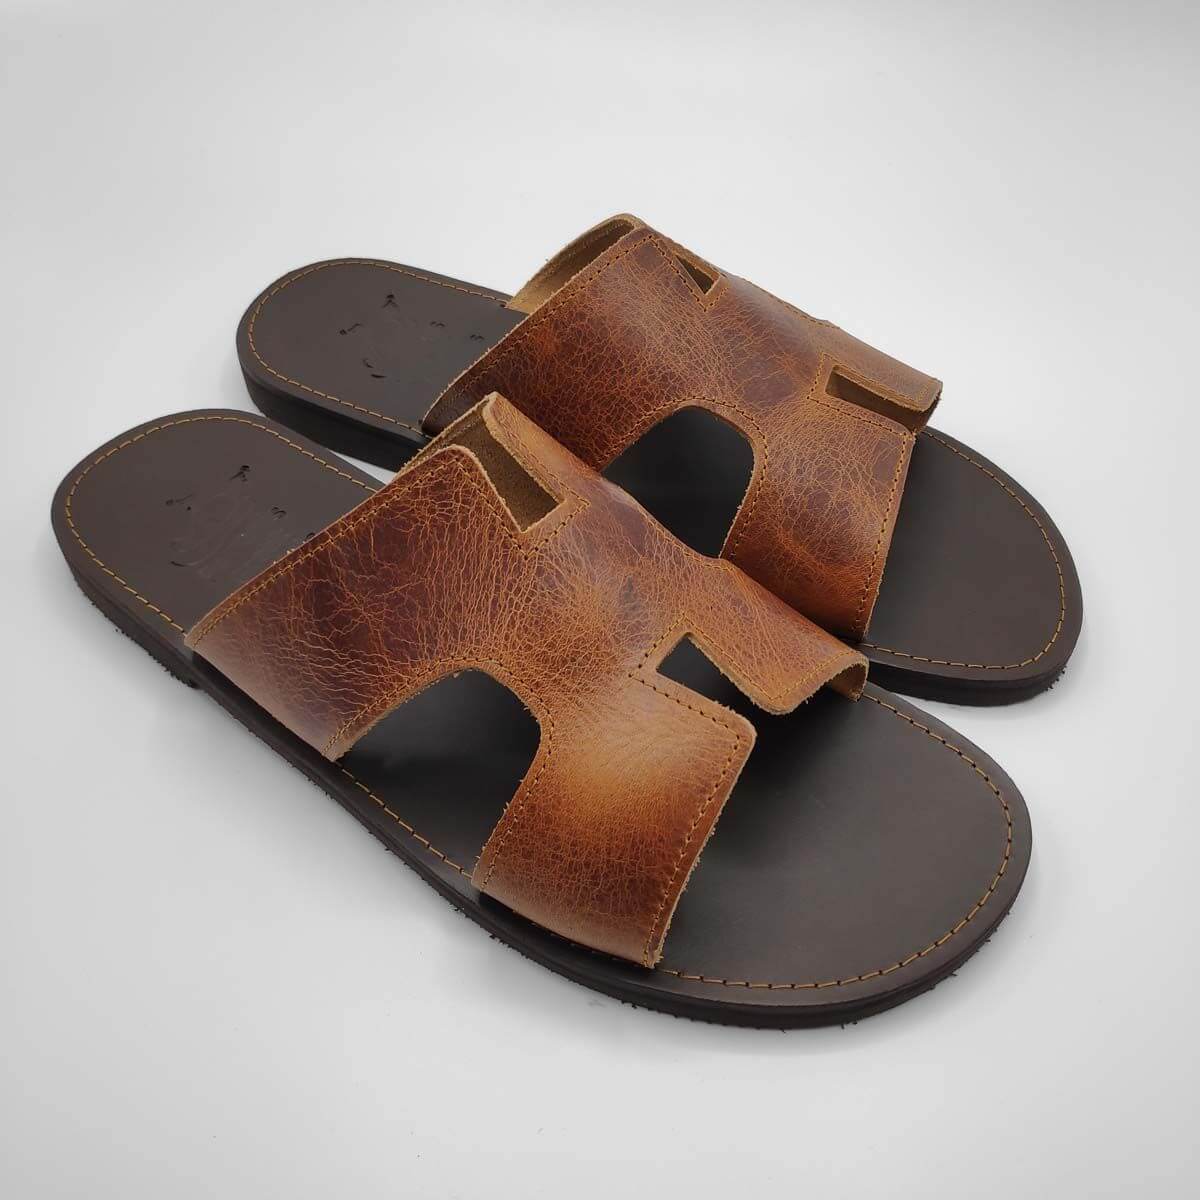 Ademen laten vallen Vast en zeker Hermes Slides Men Handmade - Leather Sandals | Pagonis Greek Sandals